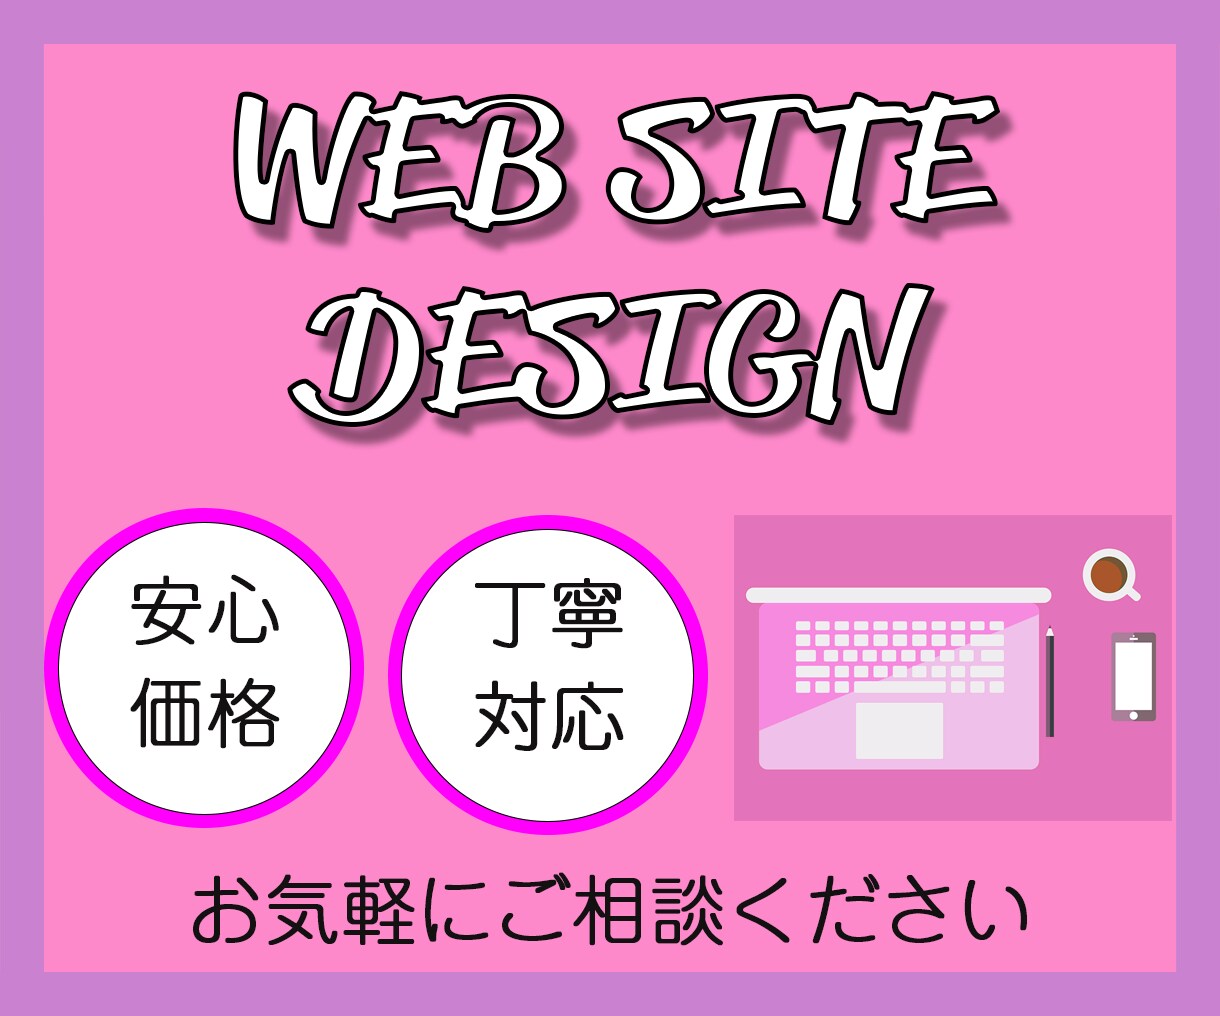 Wix STUDIO ペライチでデザインします Webサイトのデザインお任せください イメージ1